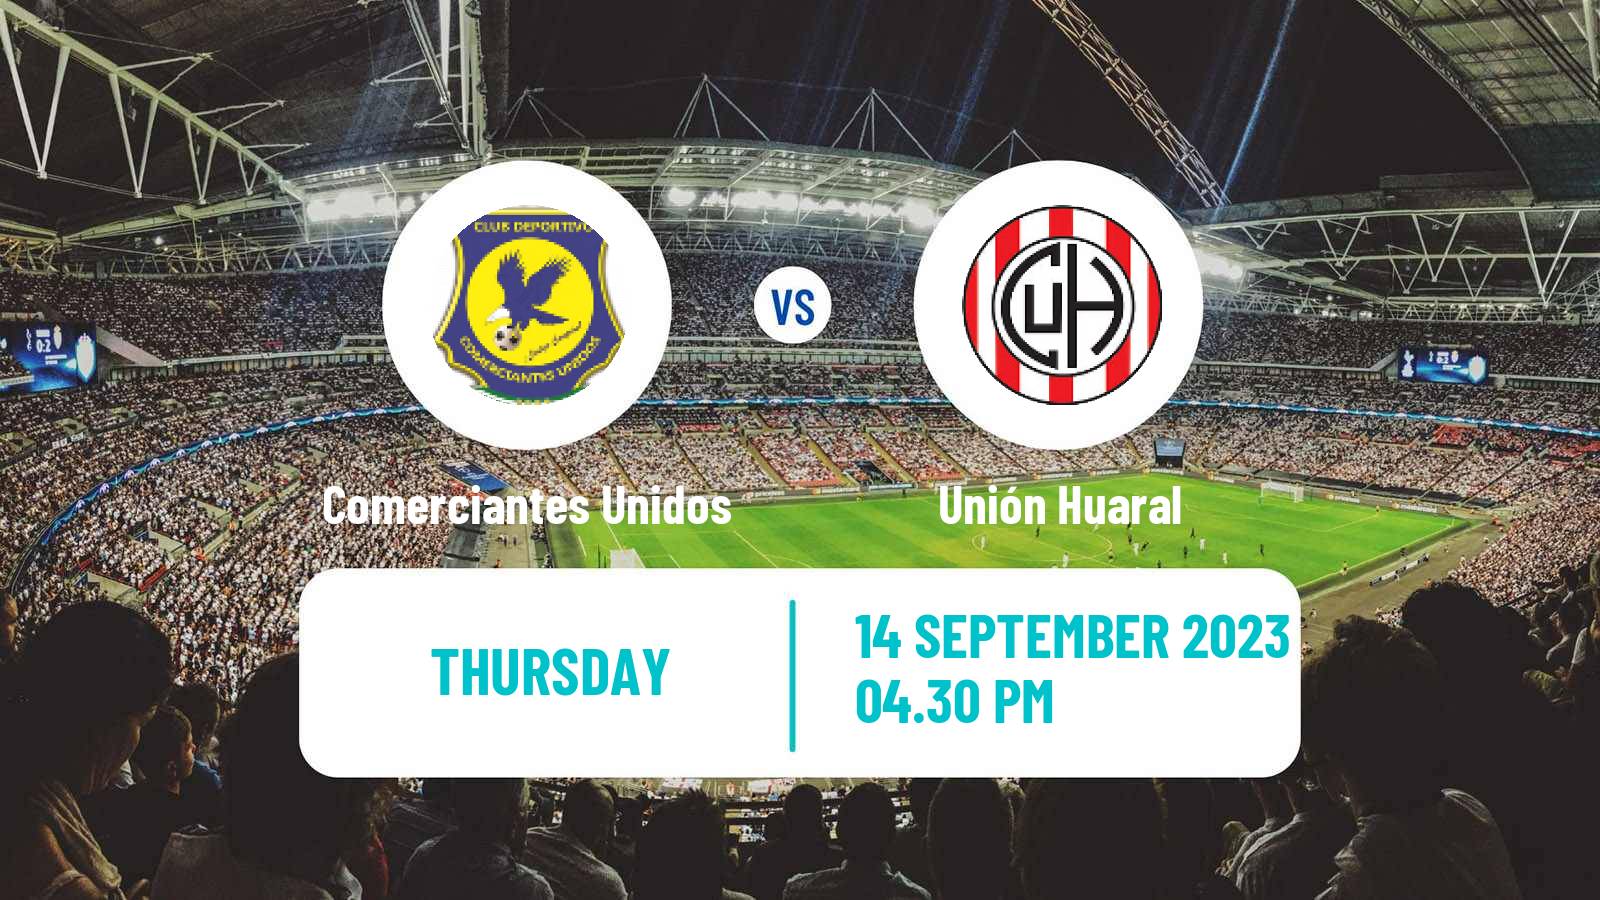 Soccer Peruvian Liga 2 Comerciantes Unidos - Unión Huaral